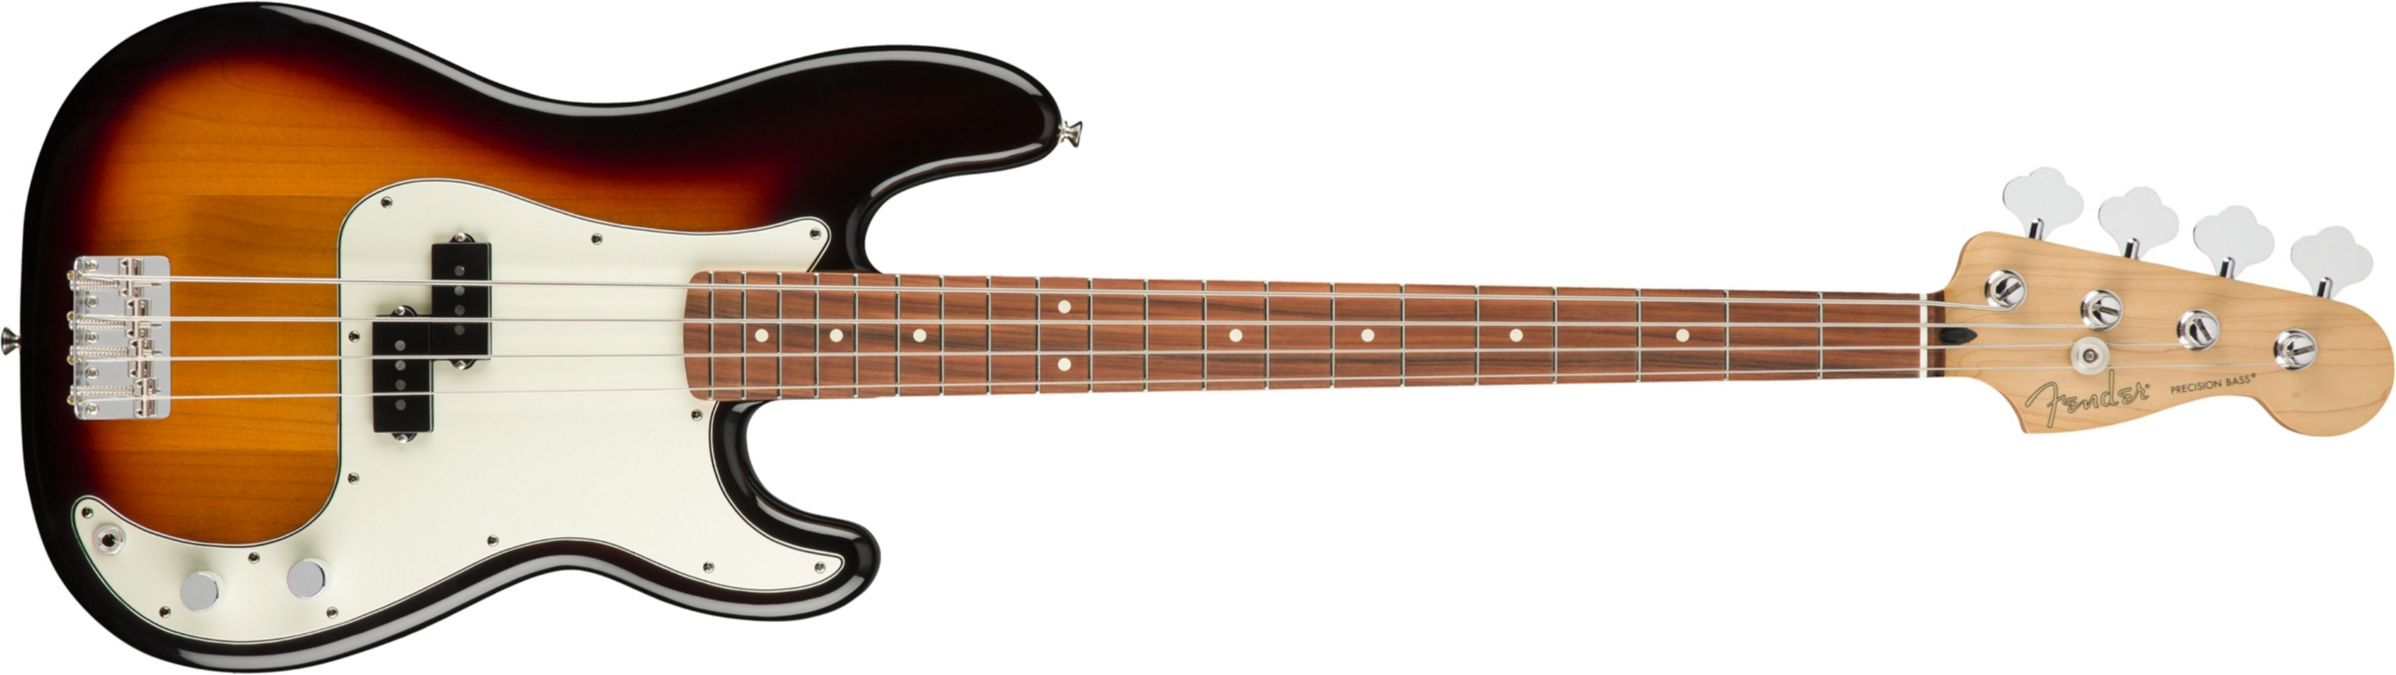 Fender Precision Bass Player Mex Pf - 3-color Sunburst - Basse Électrique Solid Body - Main picture